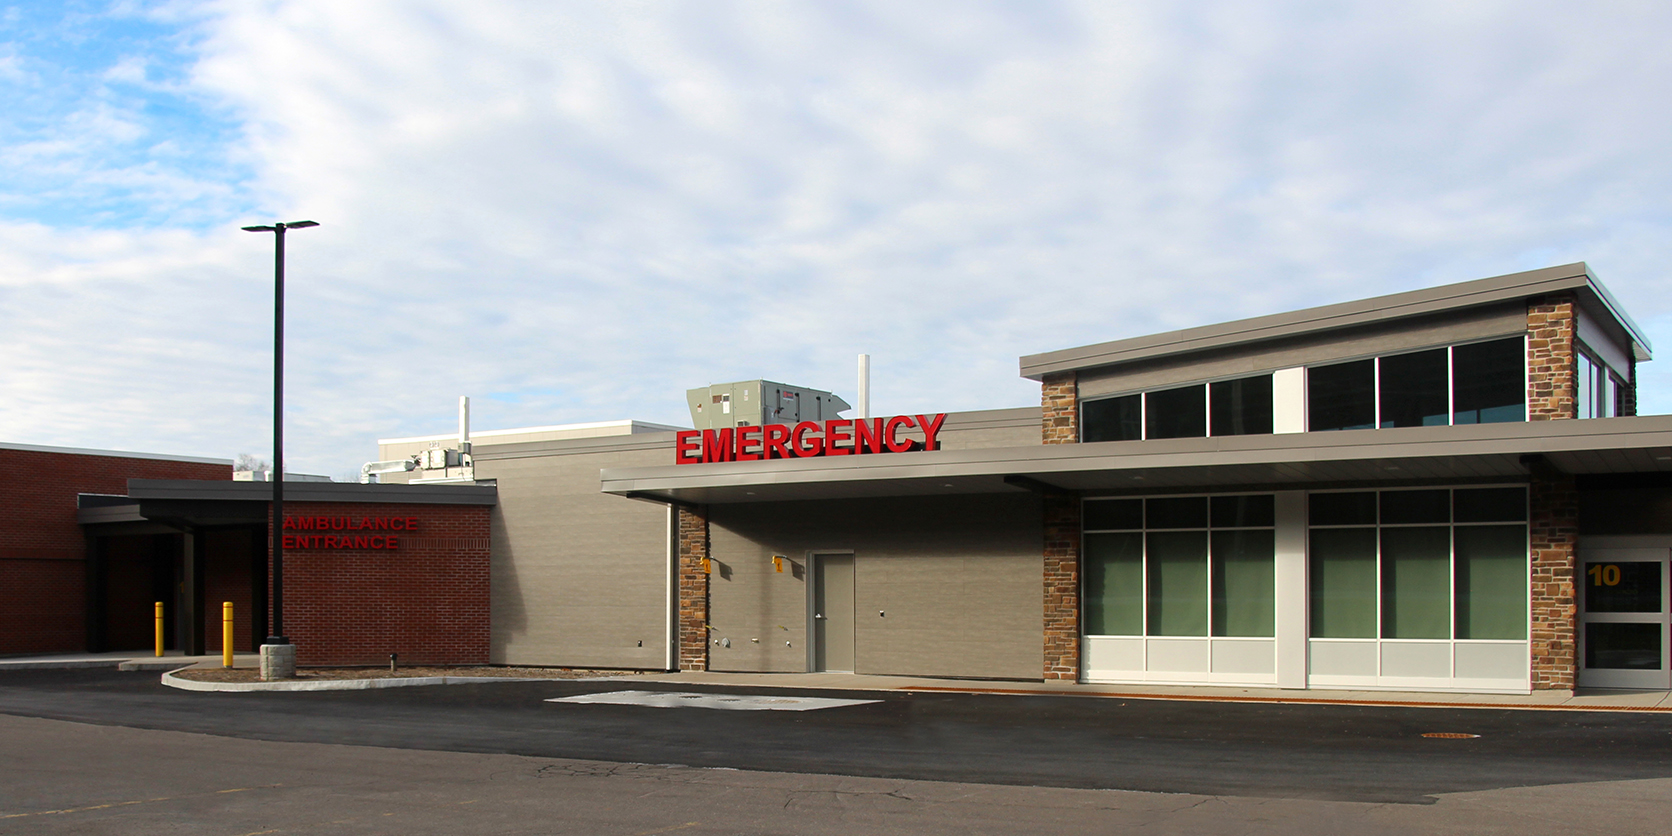 Emergency services facility at Community Memorial Hospital in Hamilton, NY